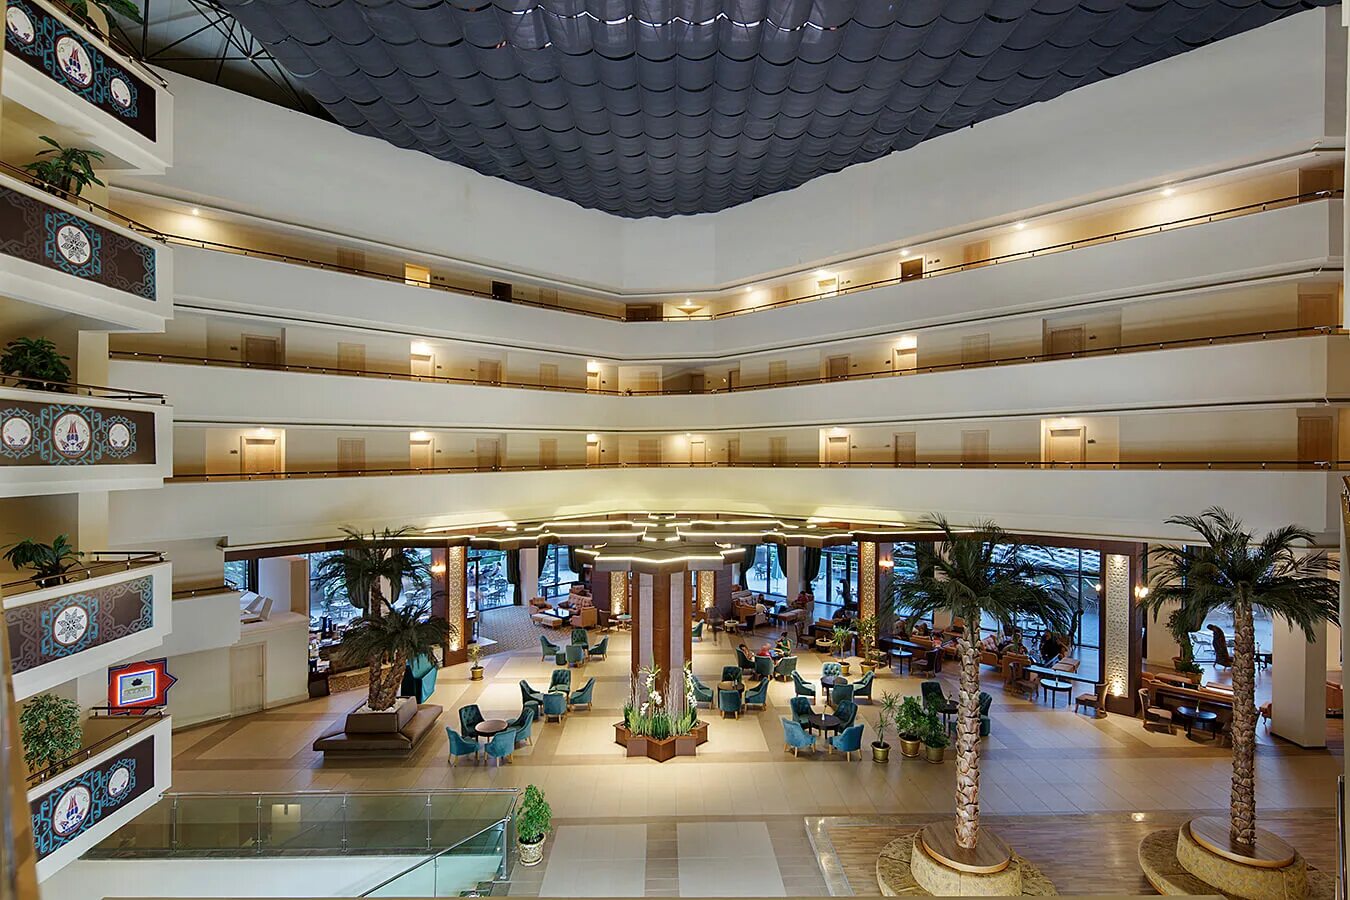 Nashira Resort Hotel Spa 5. Nashira Resort Hotel & Aqua Spa. Nashira Resort Hotel Spa 5 Турция Сиде. Анталия отель Нашира. Lago сиде